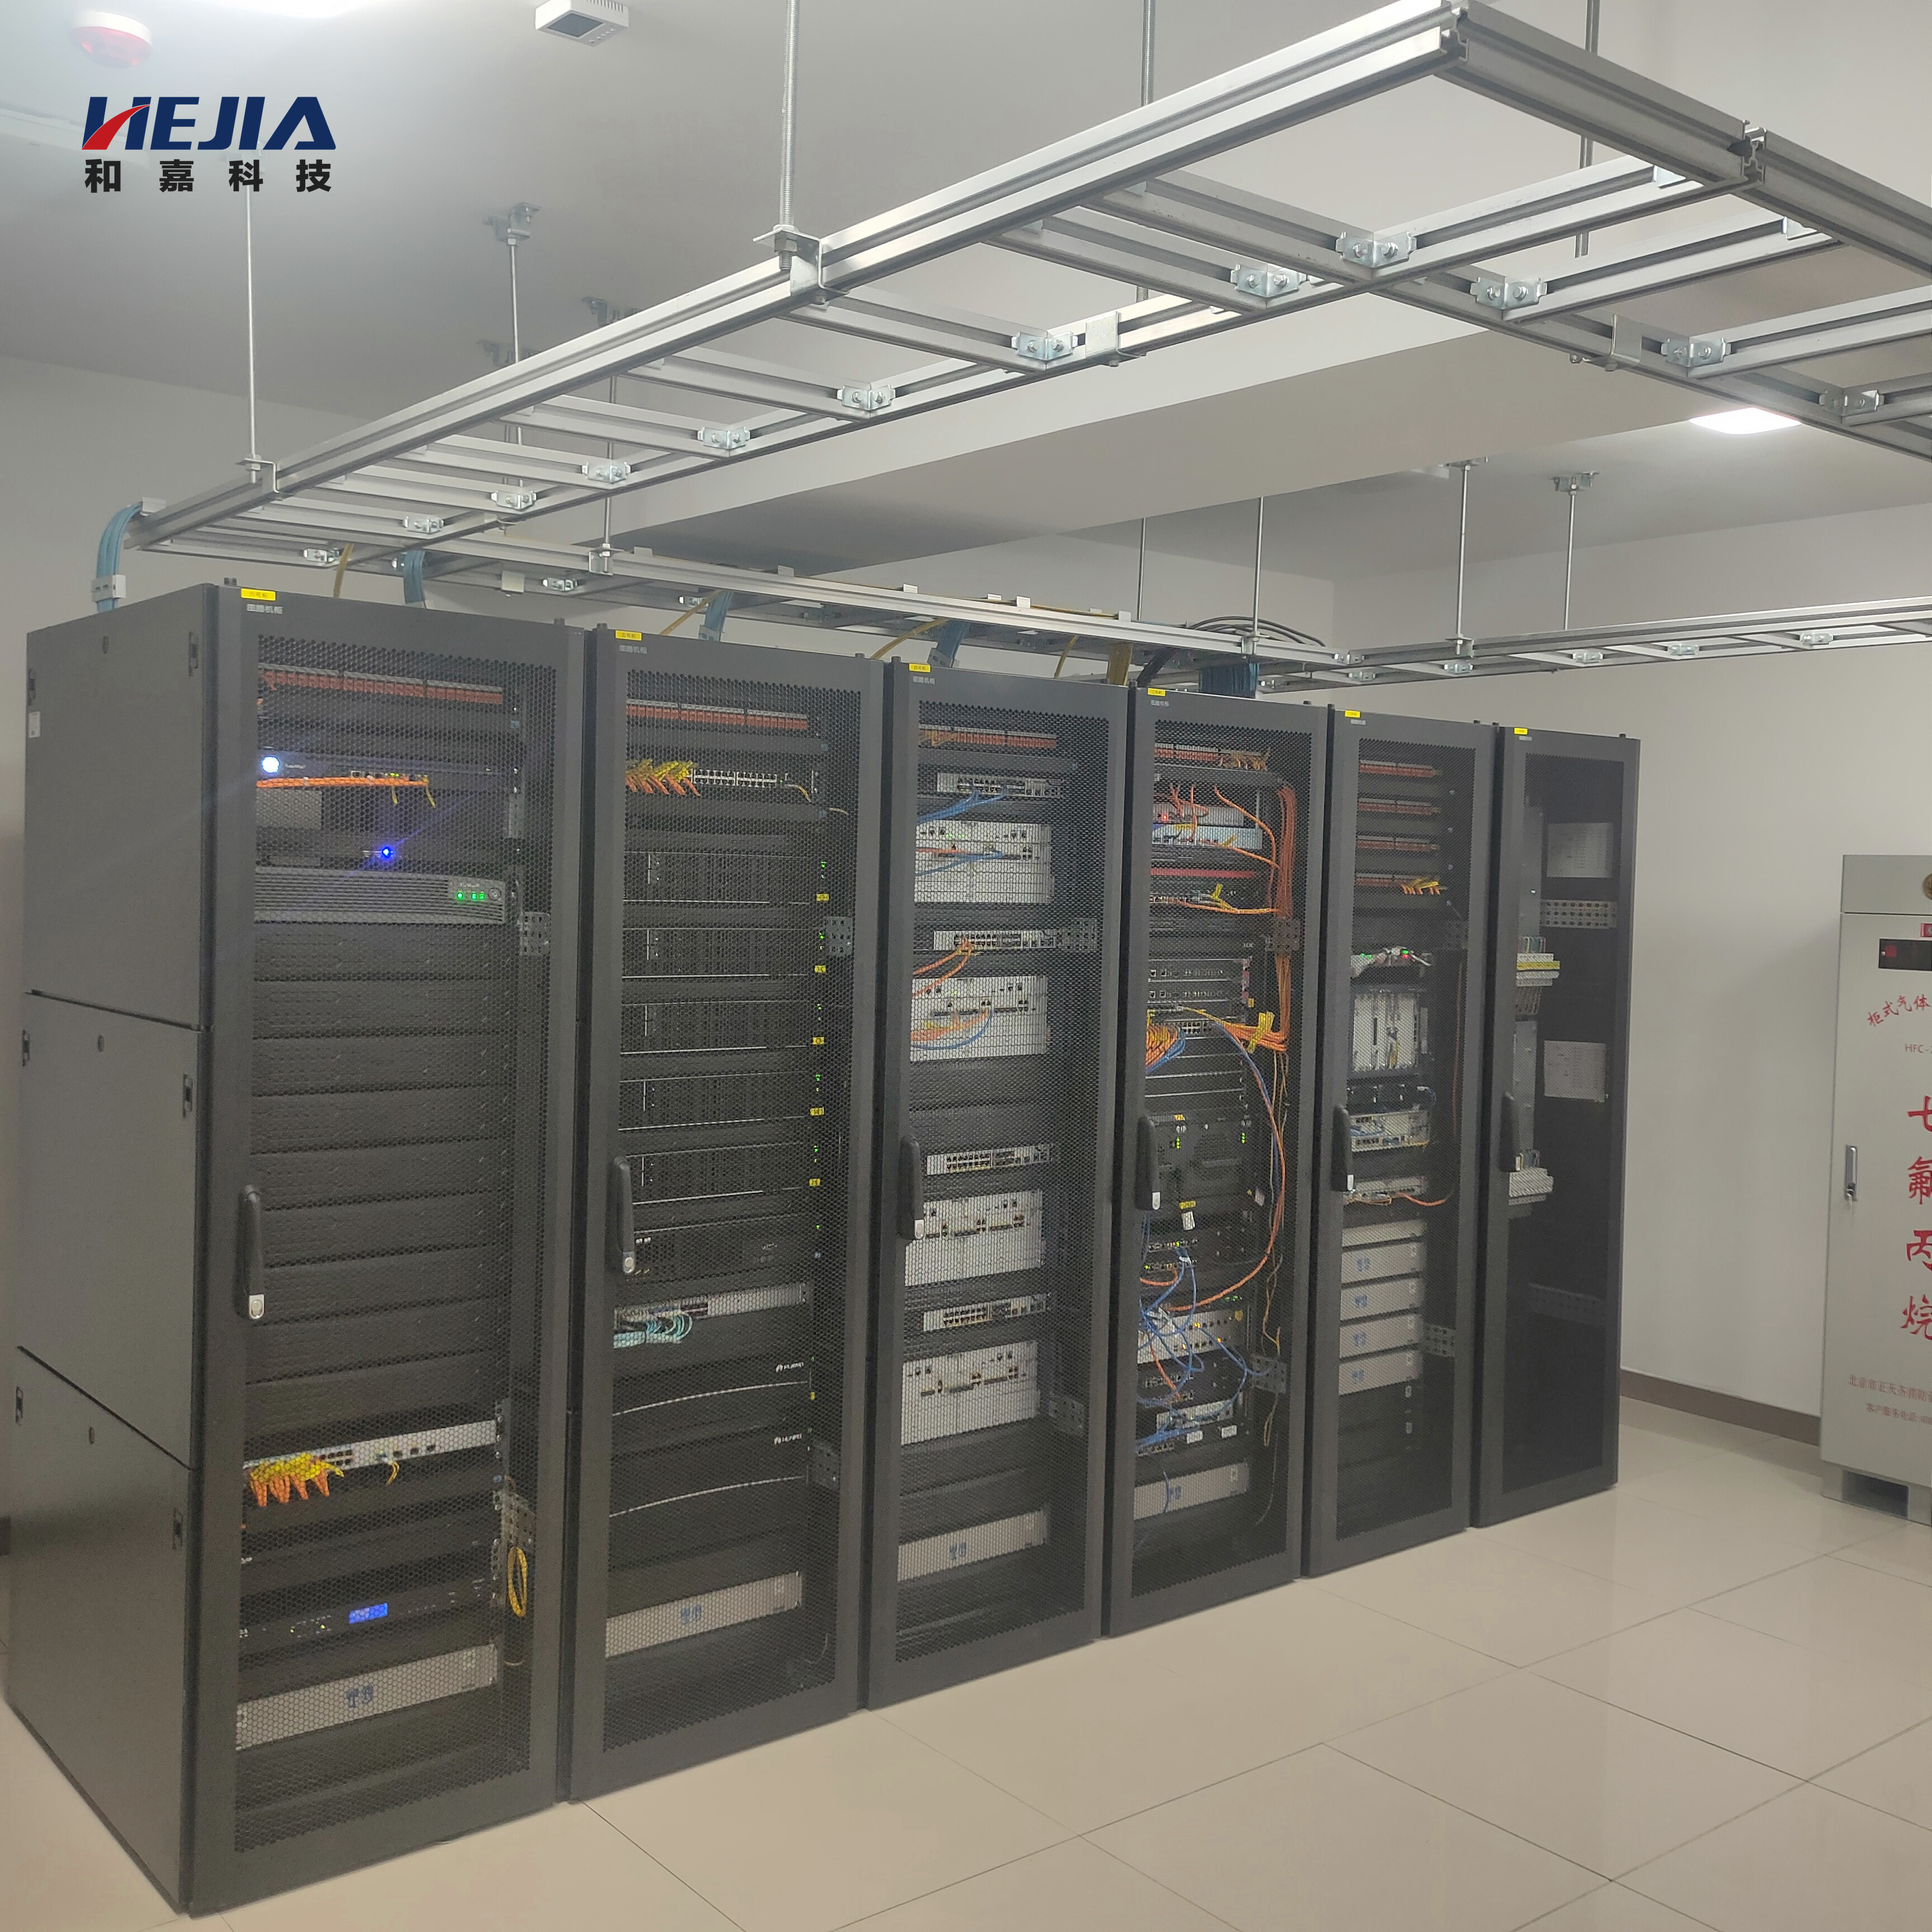 和嘉 | 新疆和田部队通信工程11个联网机房环境监测系统项目